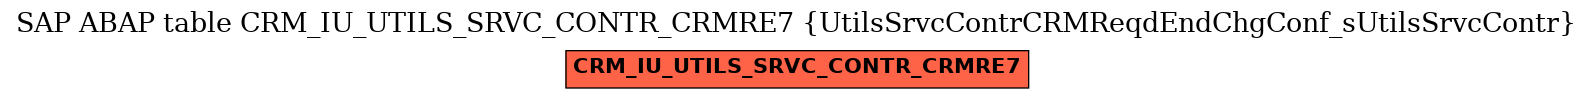 E-R Diagram for table CRM_IU_UTILS_SRVC_CONTR_CRMRE7 (UtilsSrvcContrCRMReqdEndChgConf_sUtilsSrvcContr)